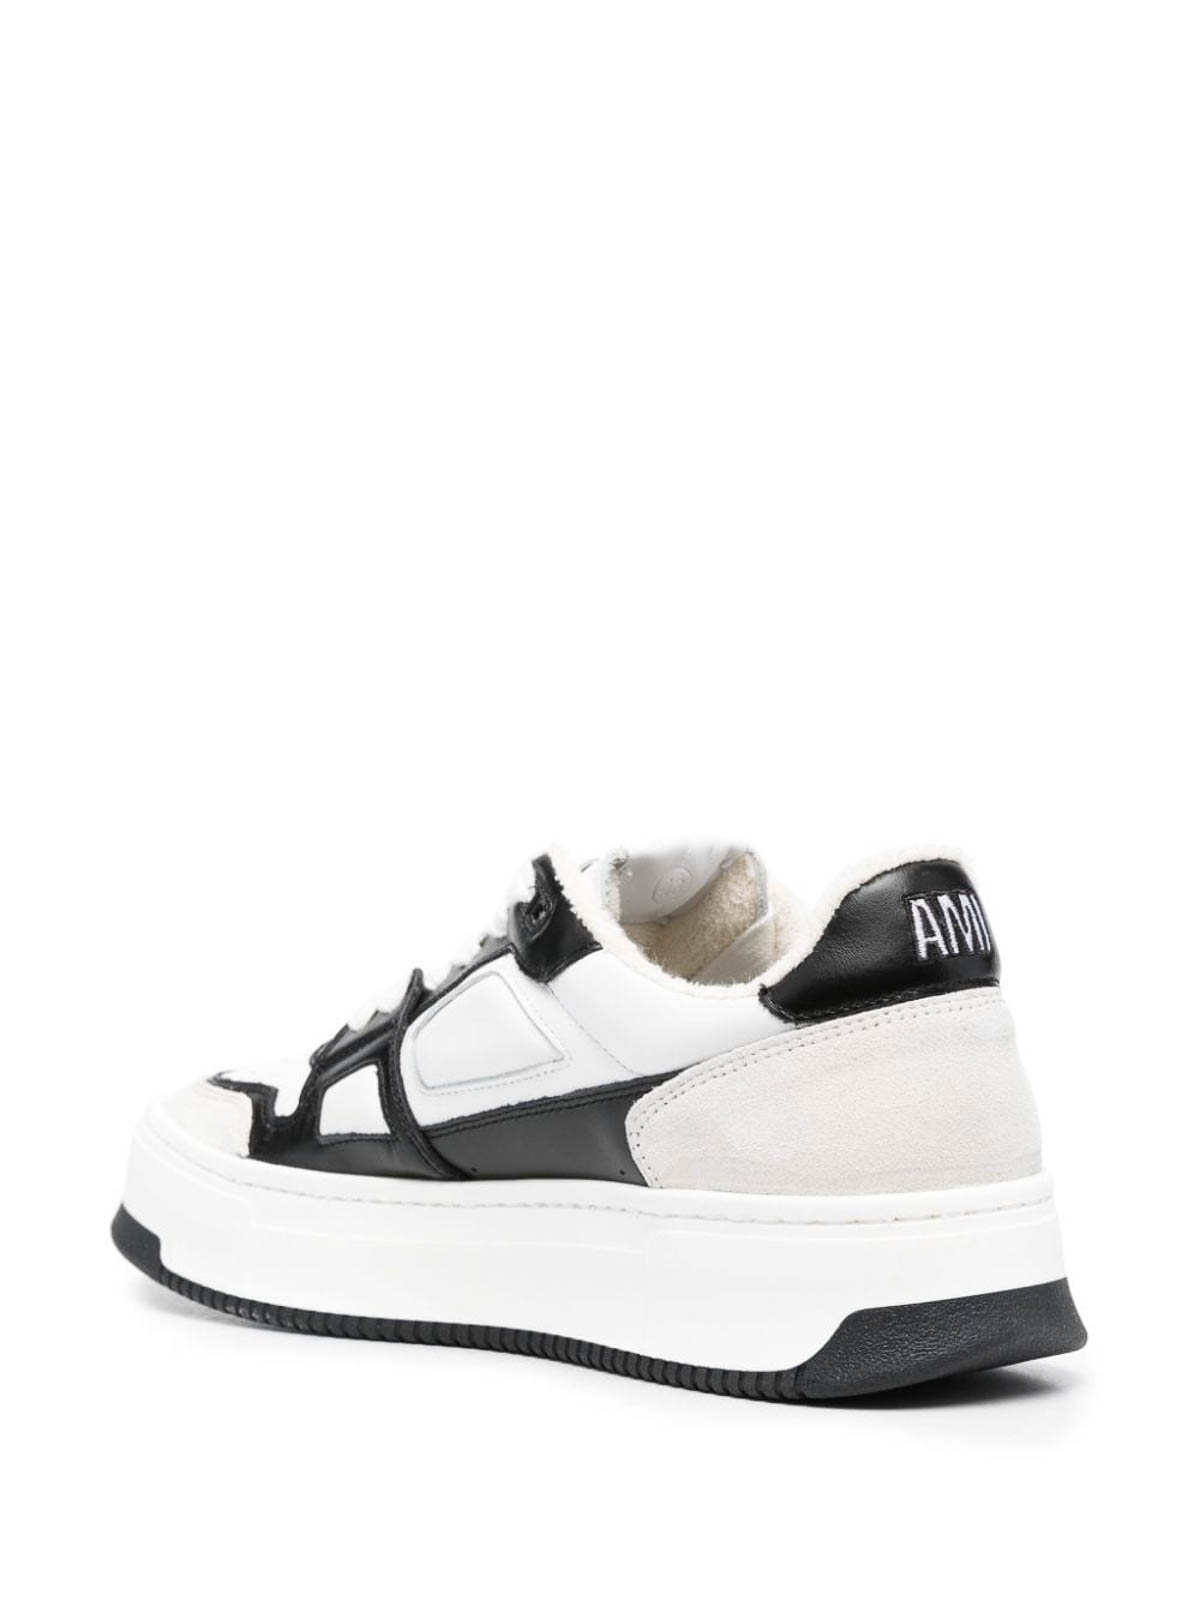 Shop Ami Alexandre Mattiussi New Arcade Sneakers In White